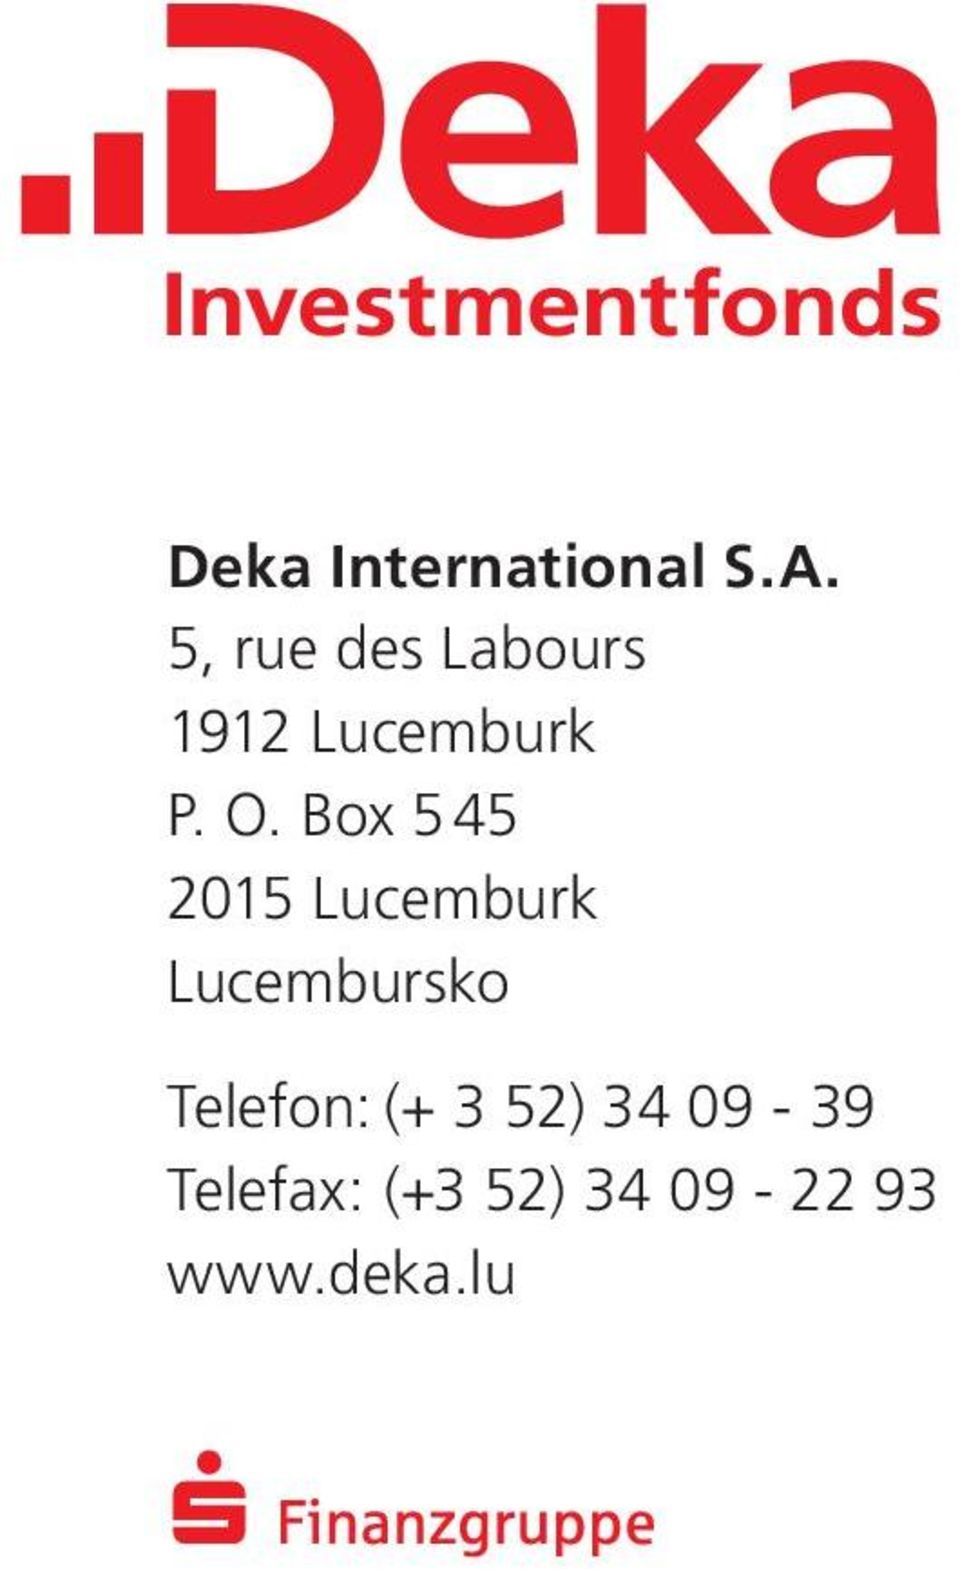 Box 5 45 2015 Lucemburk Lucembursko